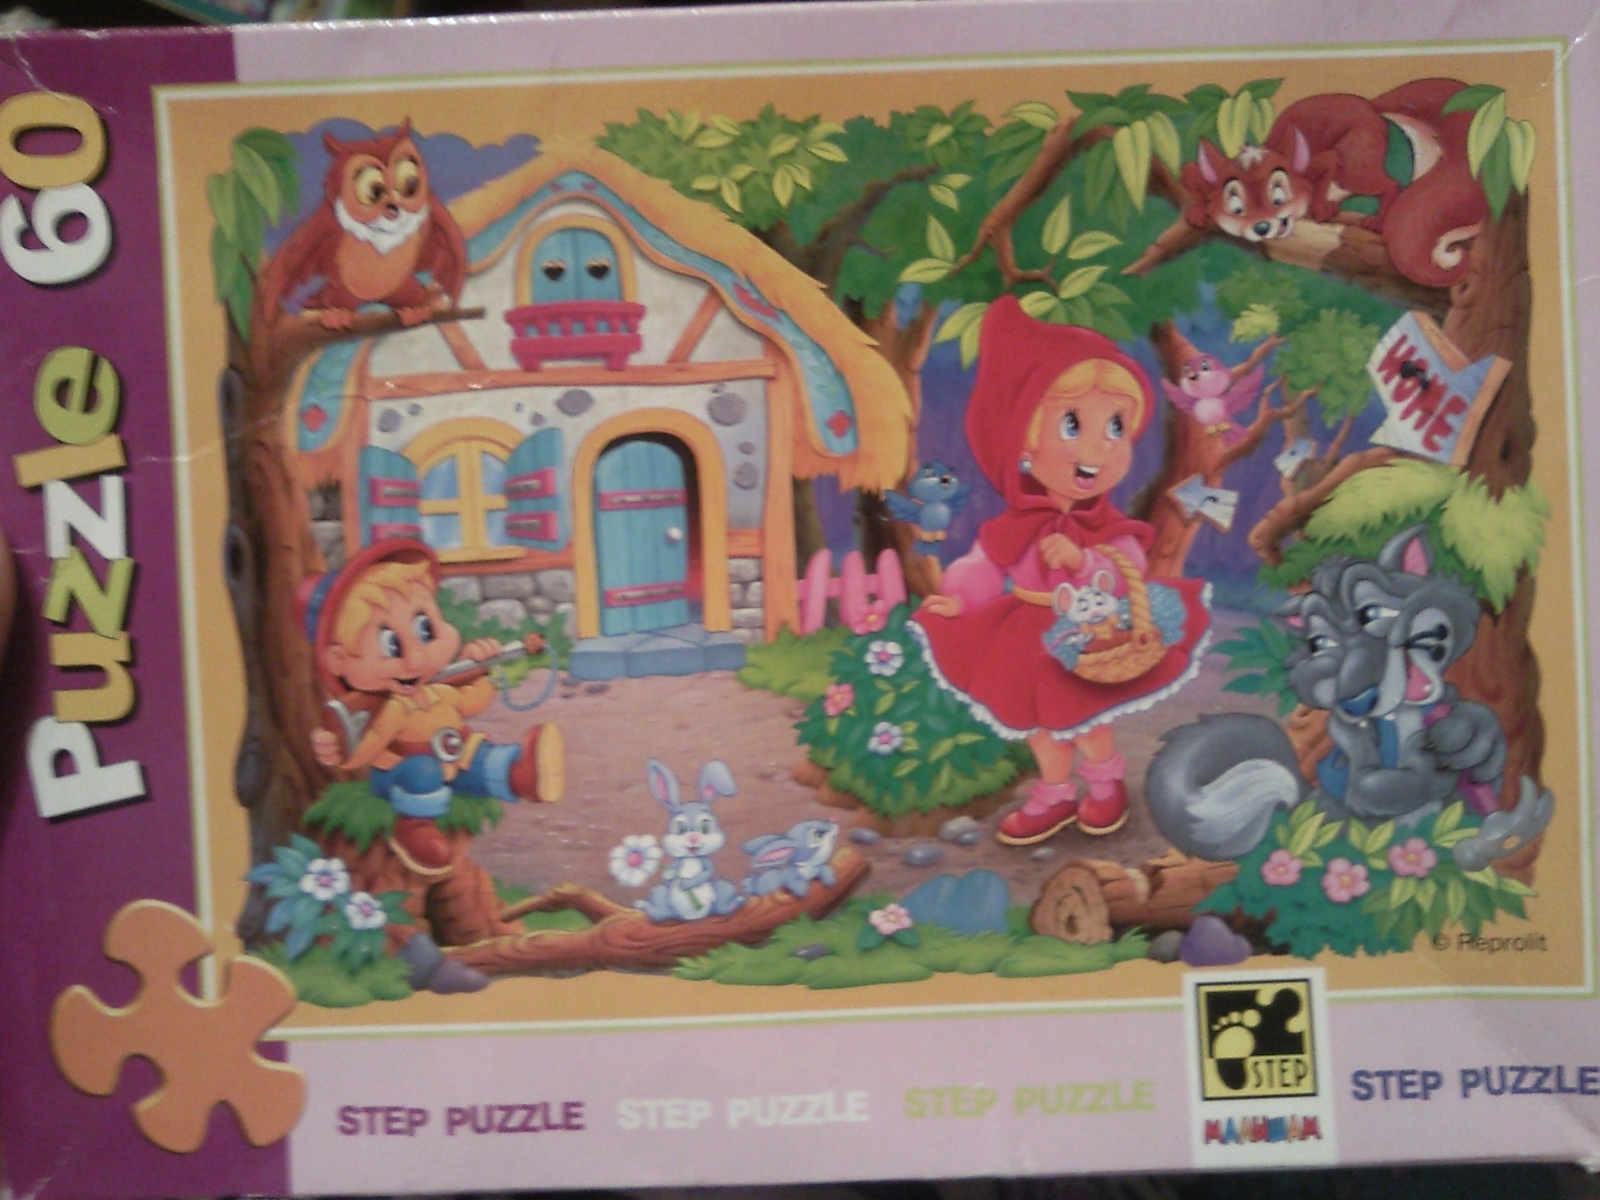 Сказочные головоломки. Пазл Step Puzzle красная шапочка (81016), 60 дет.. Пазлы по сказкам. Пазлы по сказкам для детей. Пазл герои сказок.